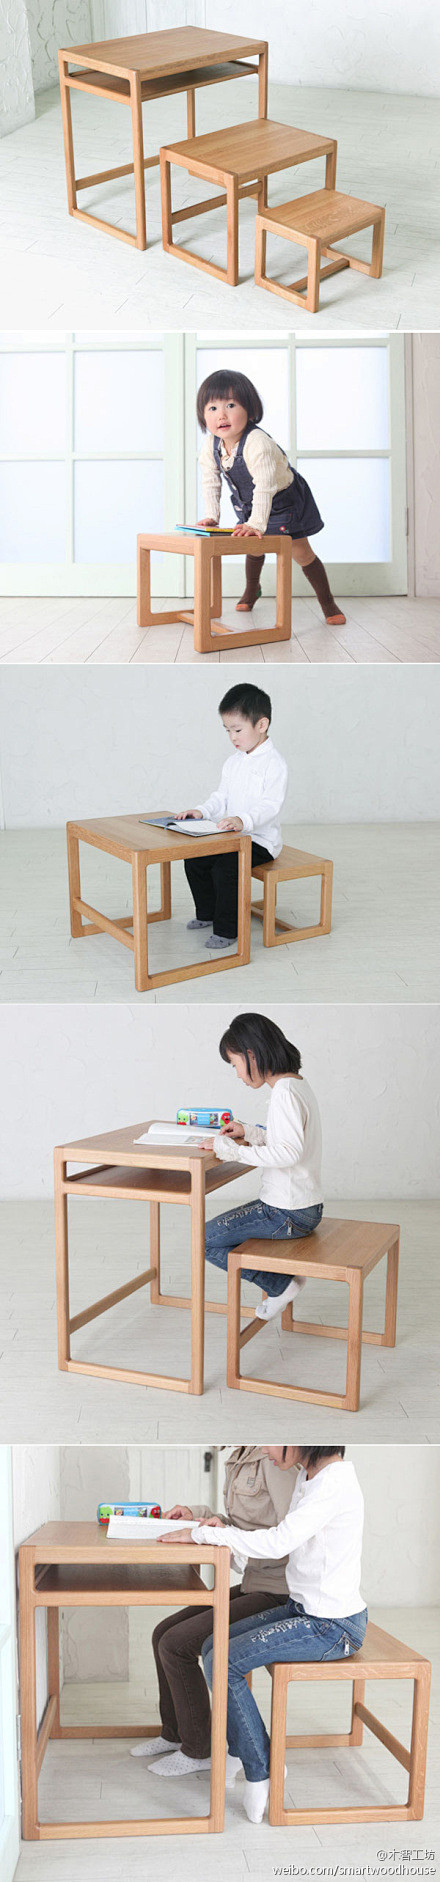 日本o-jj工作室设计的课桌三件套，可以...